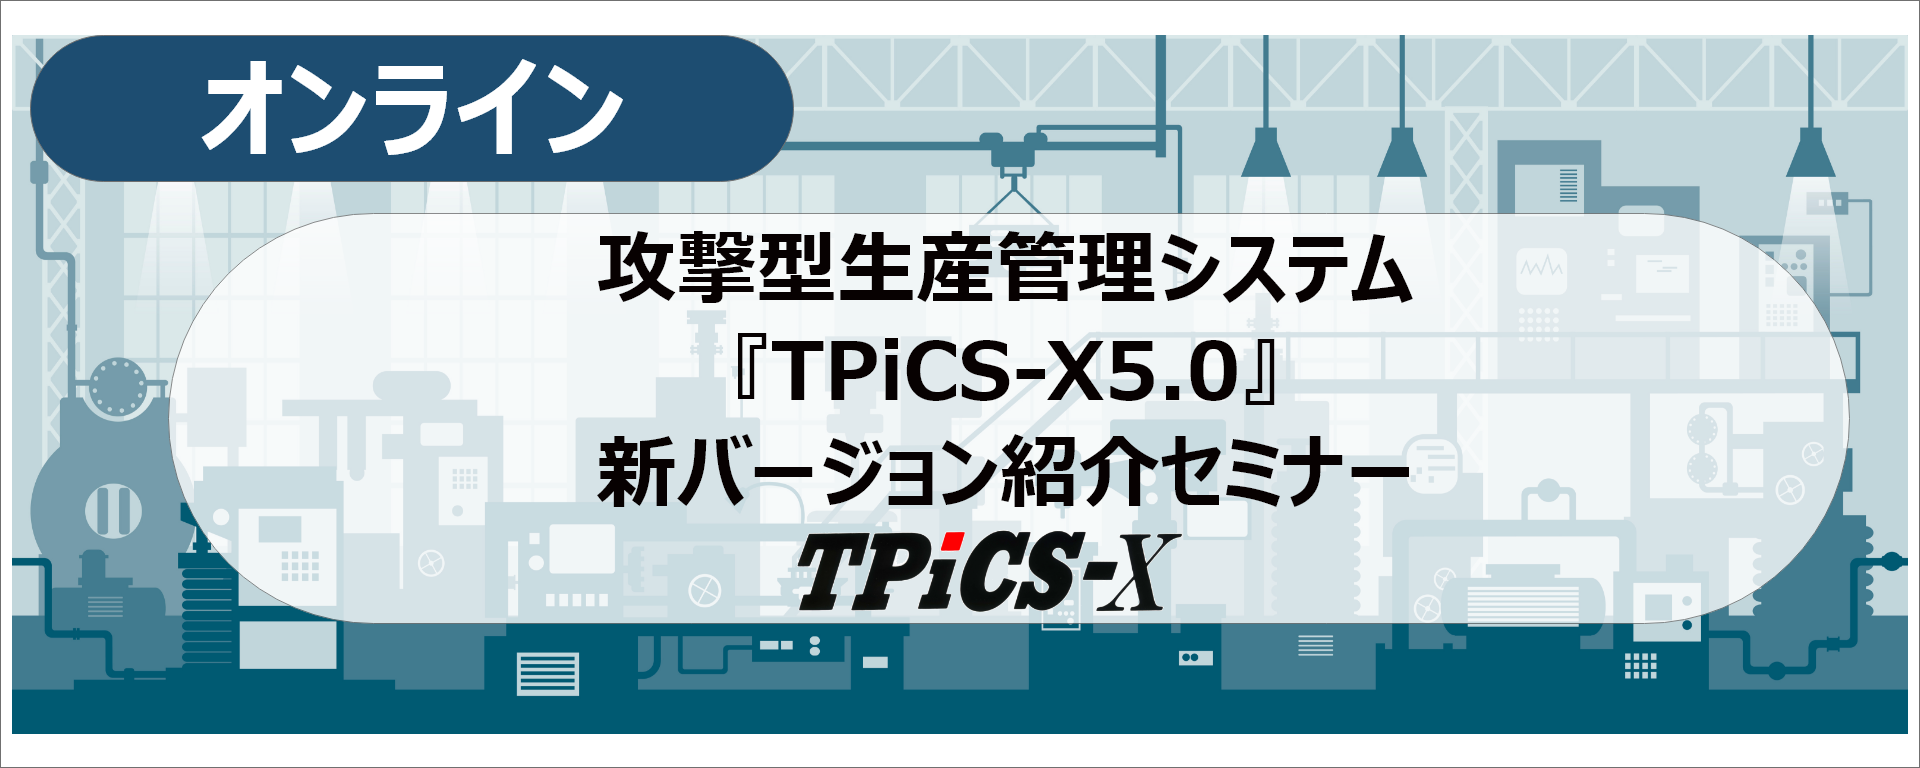 TPiCS-X 5.0